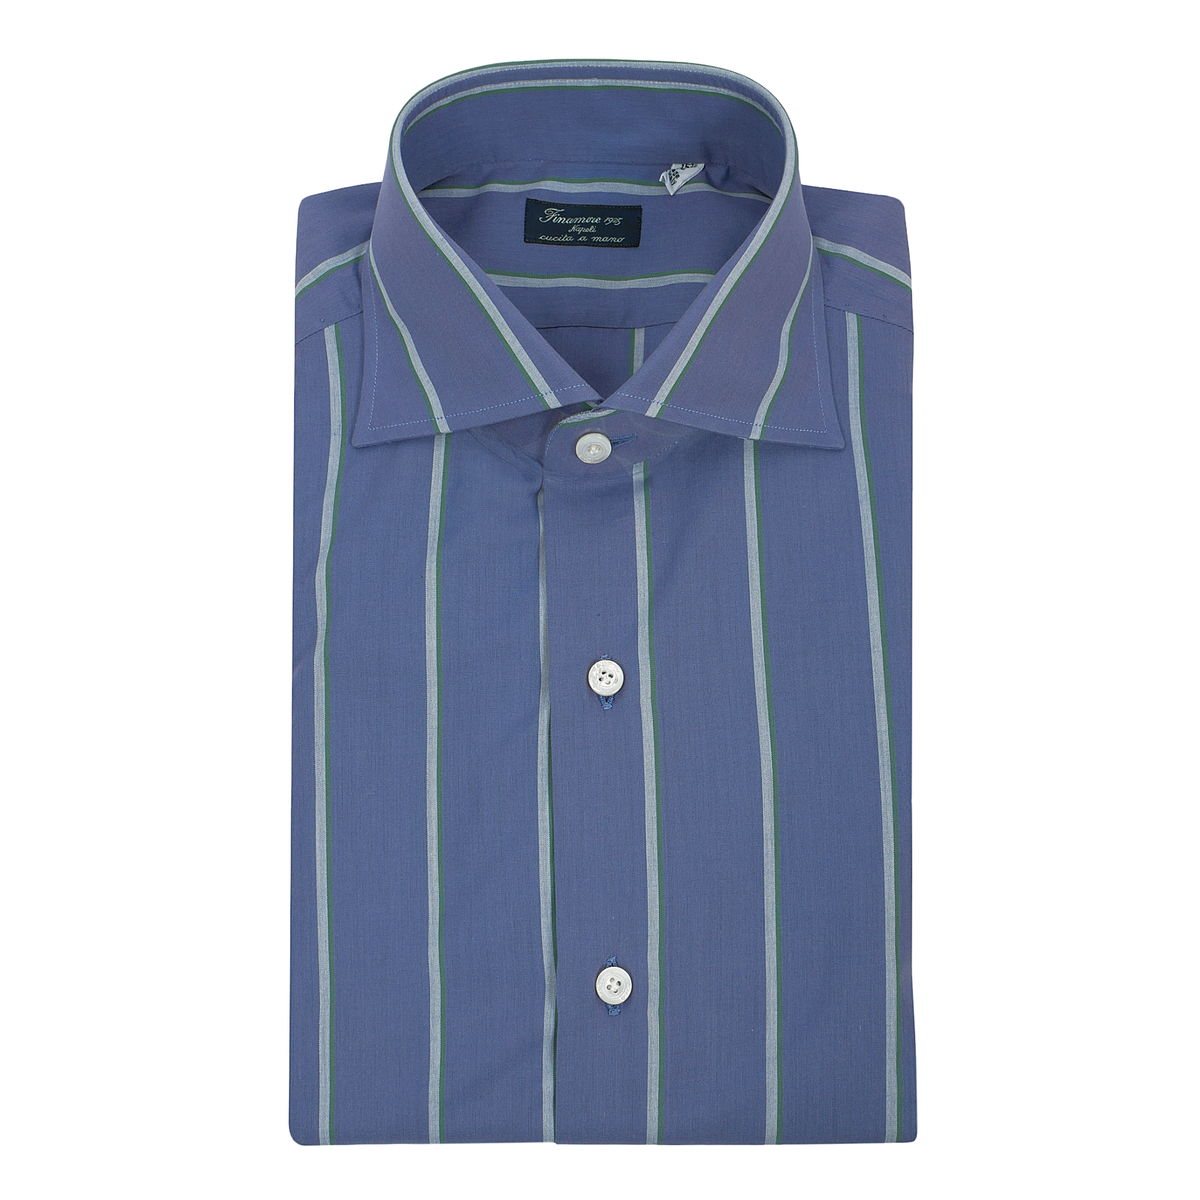 Regular shirt in green multi stripe cotton Napoli Finamore 1925